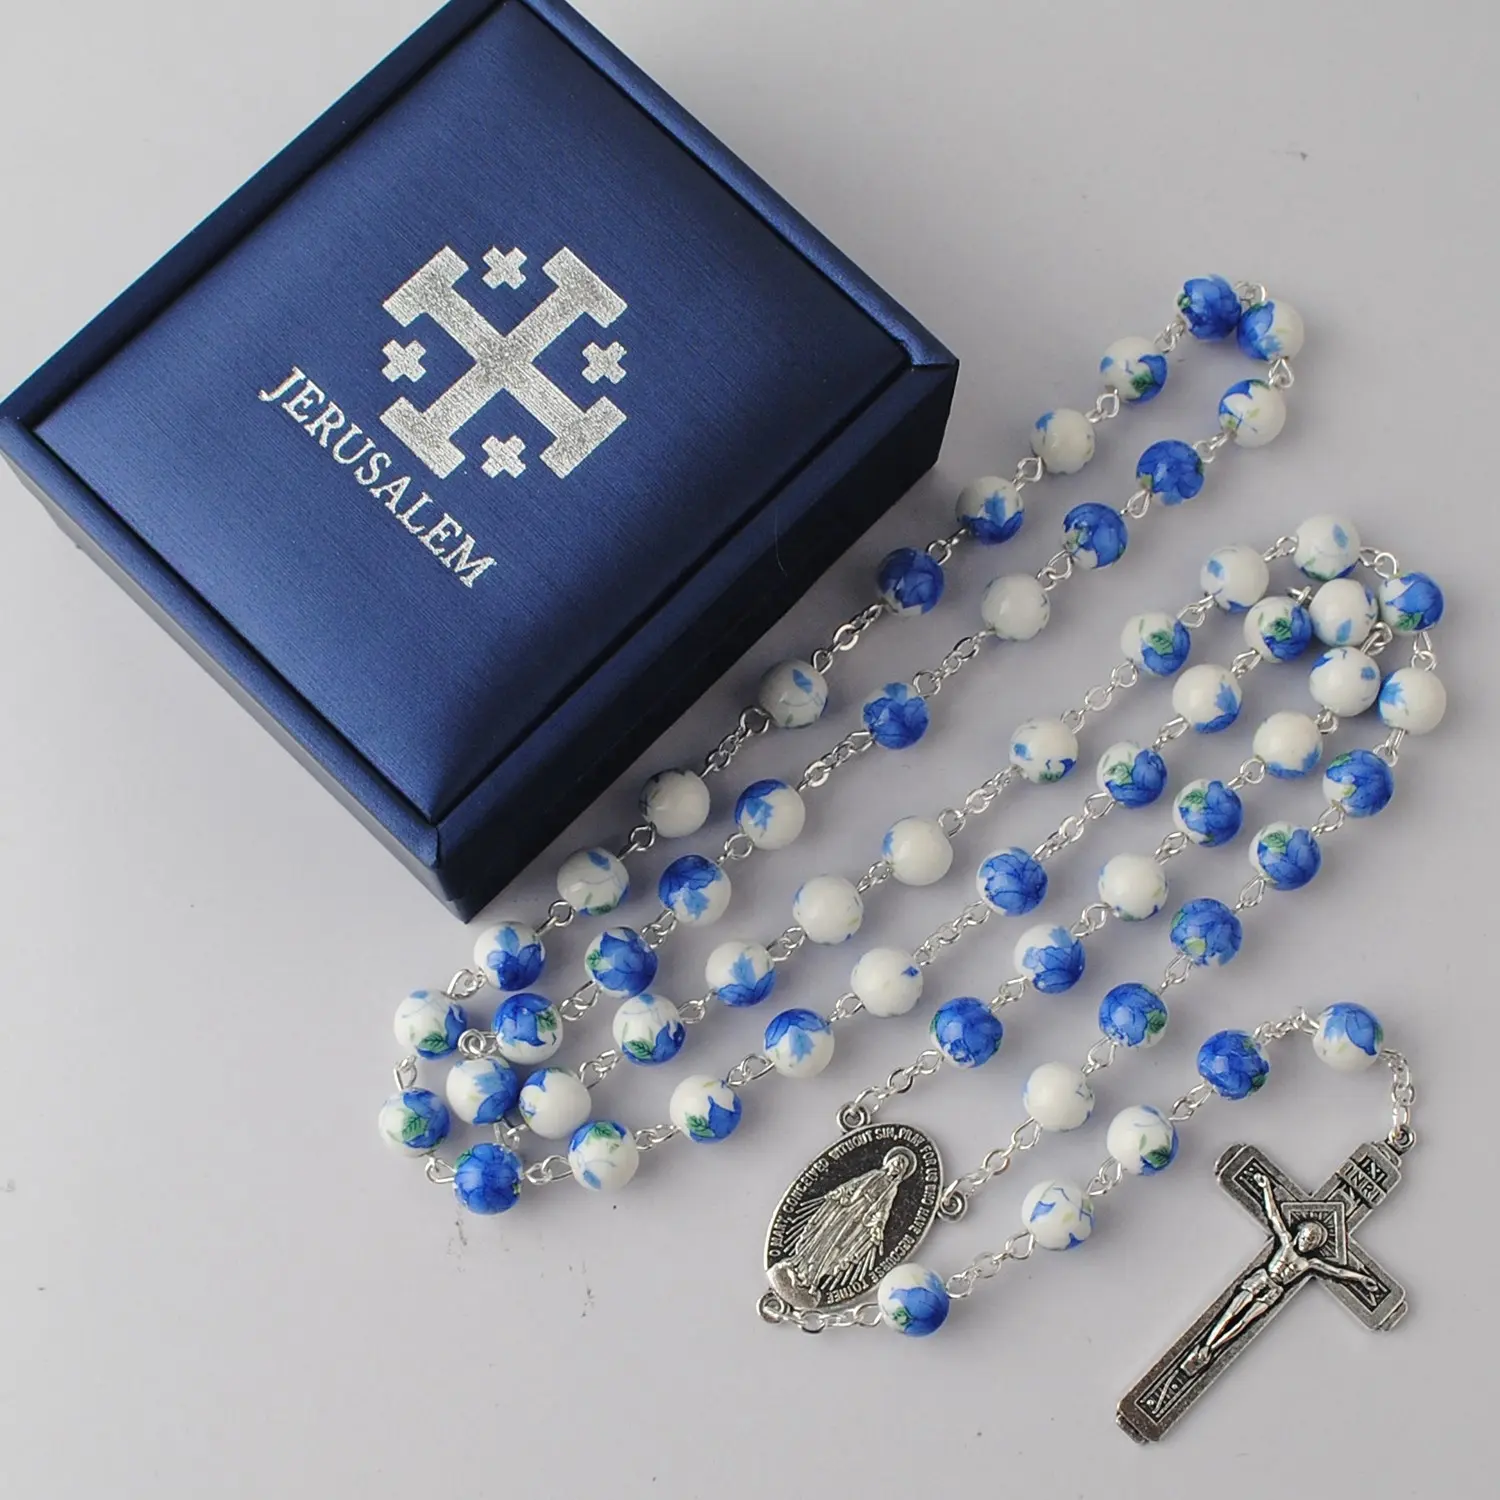 青色セラミックビーズロザリオネックレスカトリック宗教ジュエリー、シルバーチェーン、エルサレムレザーギフトボックス